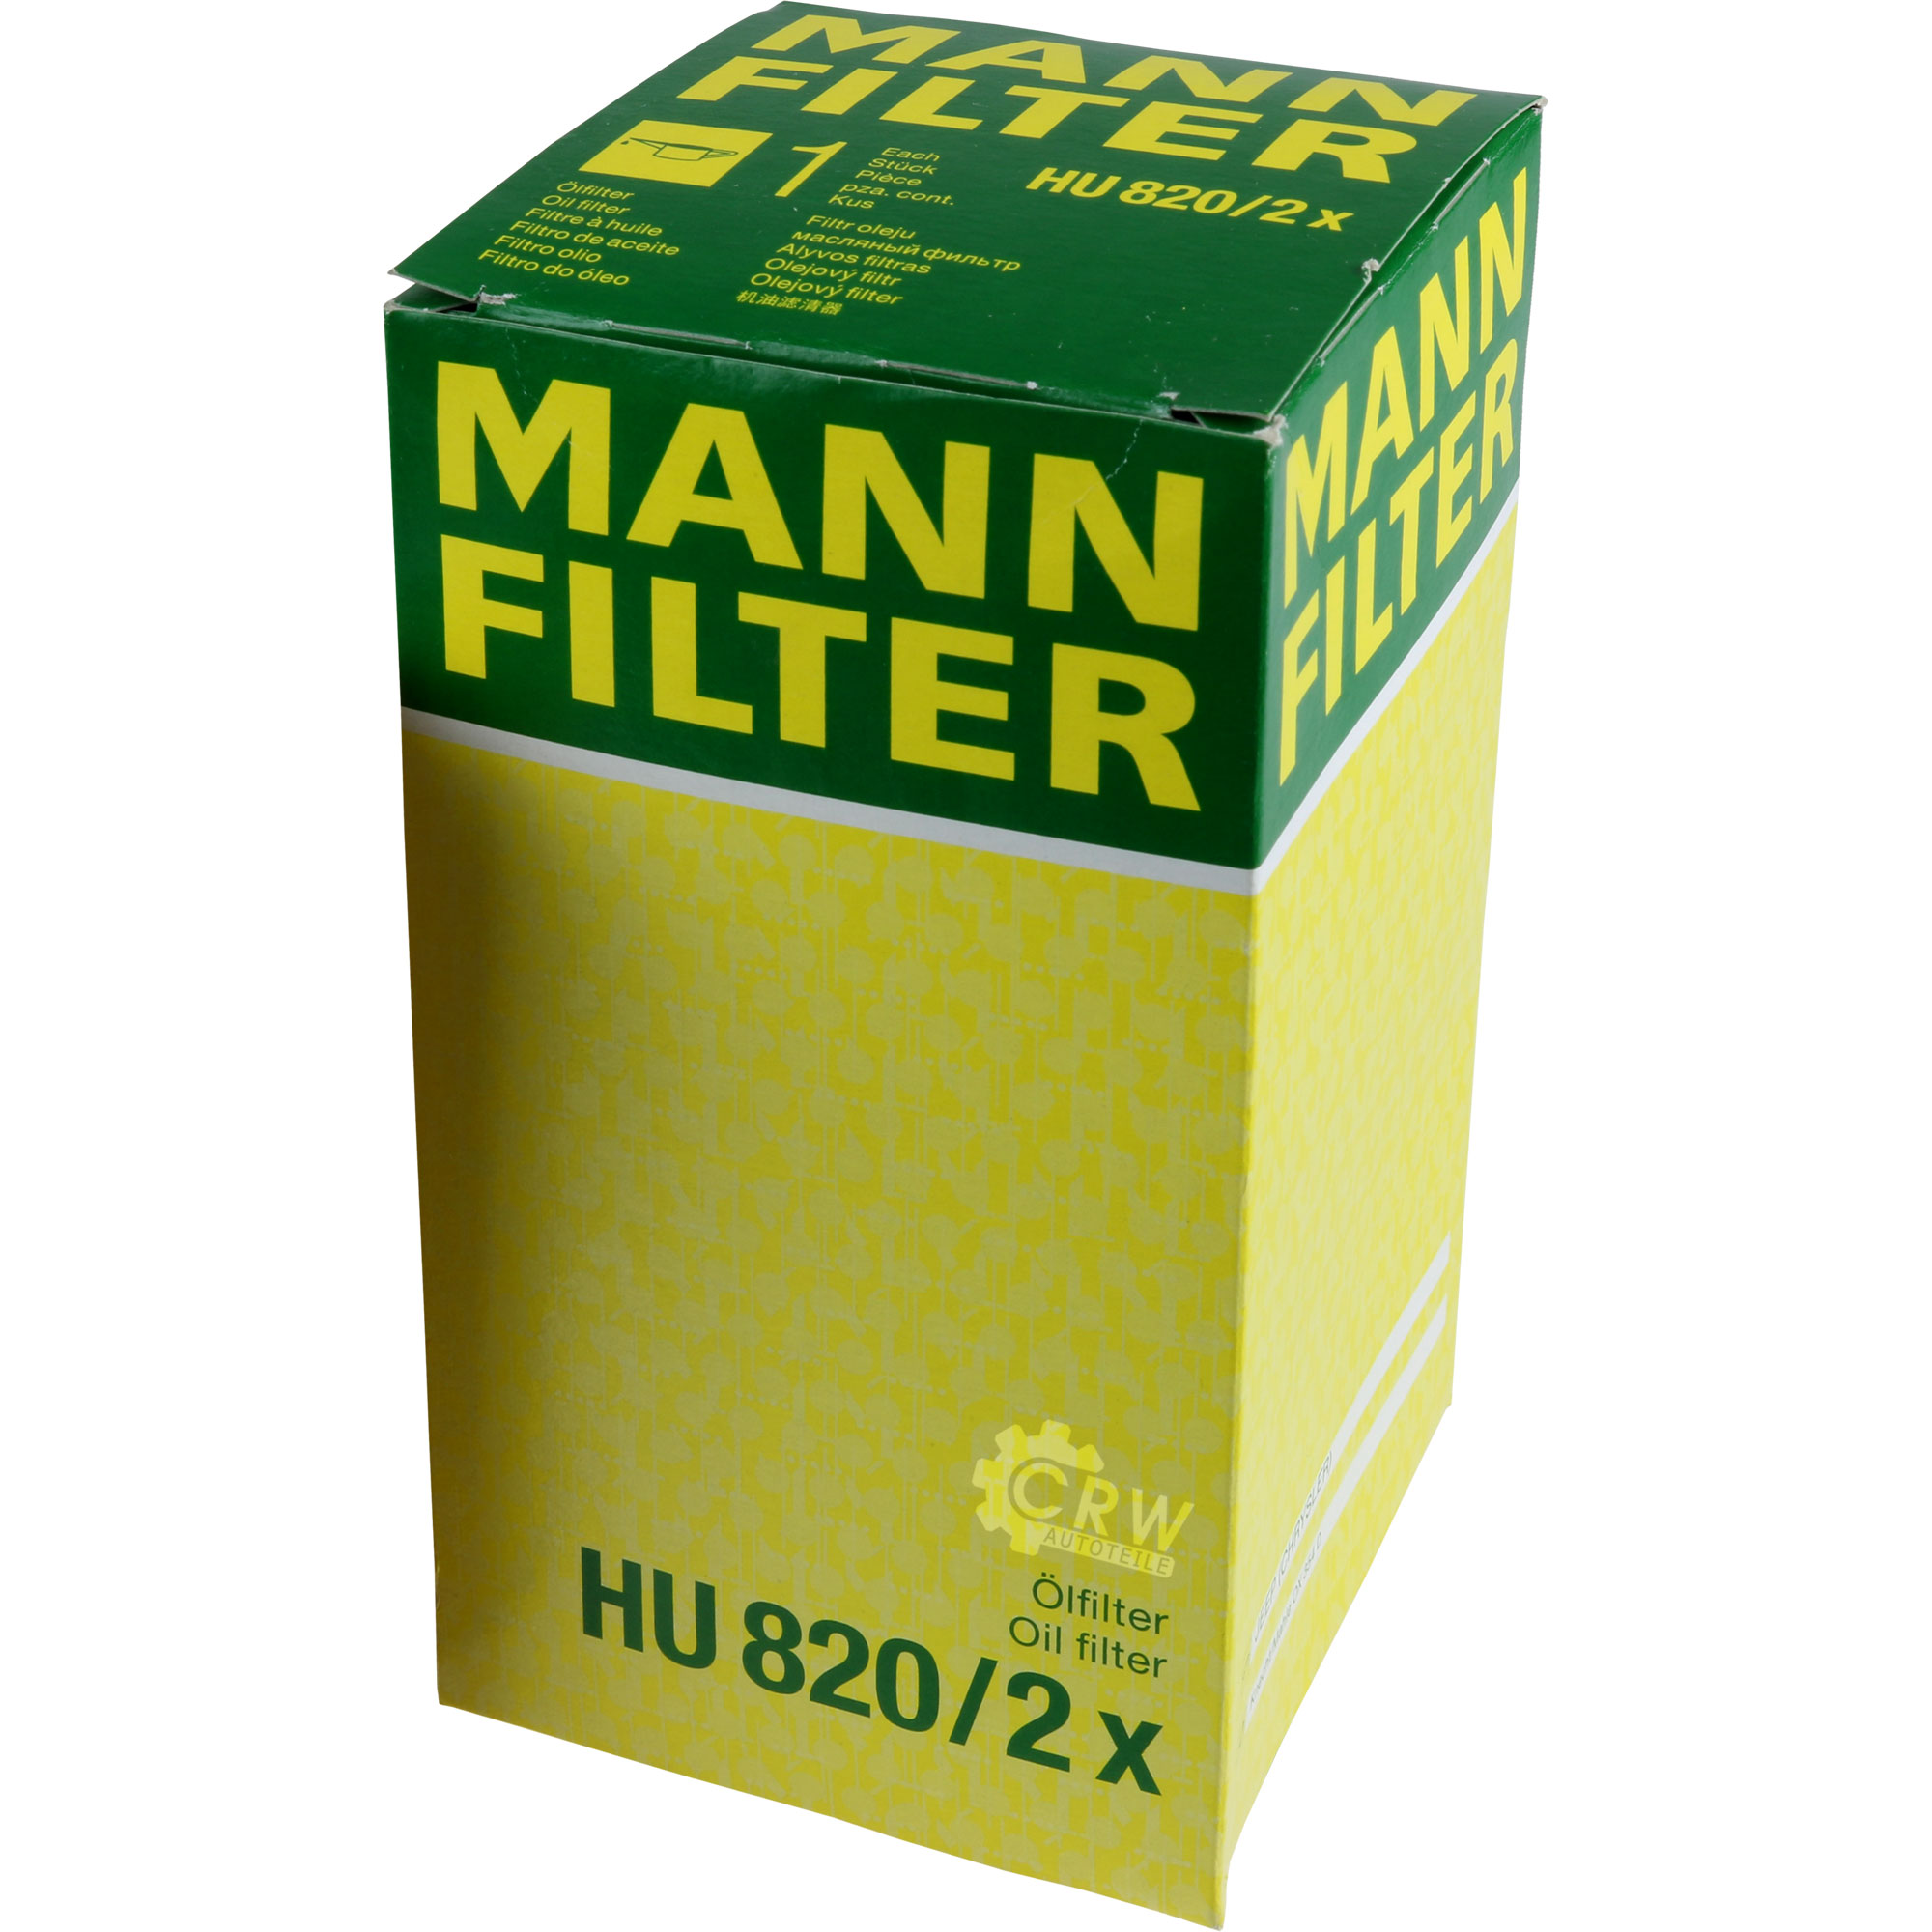 MANN-FILTER Ölfilter HU 820/2 x Oil Filter